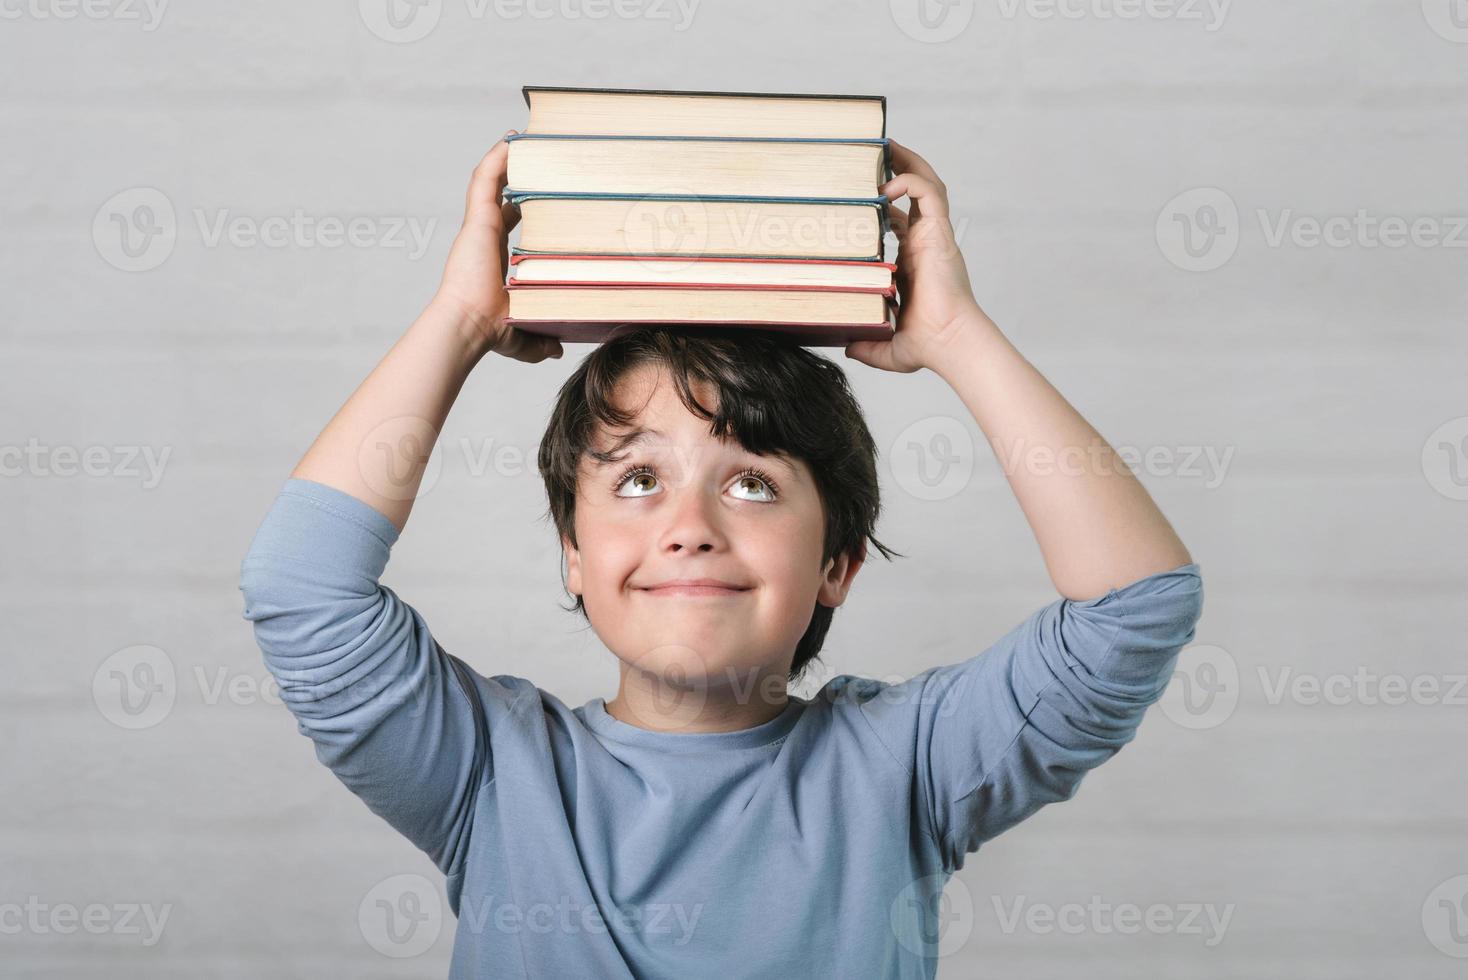 bambino felice con i libri sulla testa foto